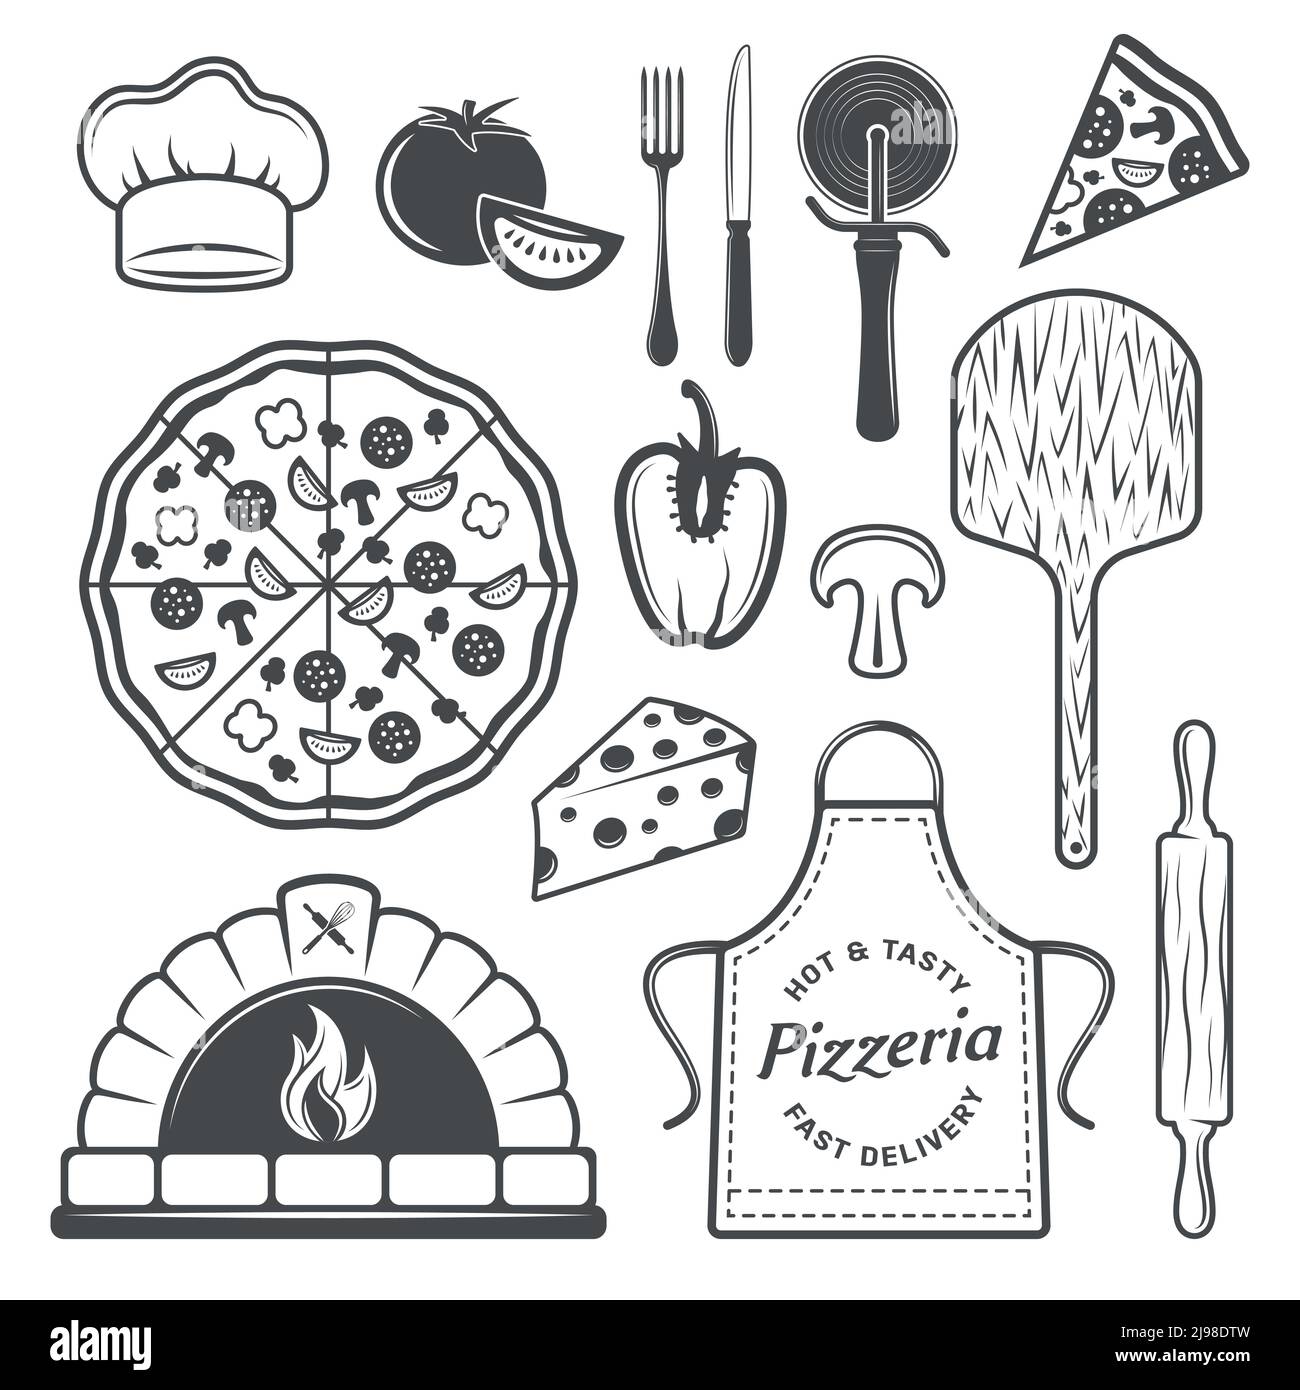 Pizzeria monochrome Elemente Set mit gekochtem Produkt und Gemüse Uniform Von Koch kulinarischen Utensilien isoliert Vektor-Illustration Stock Vektor